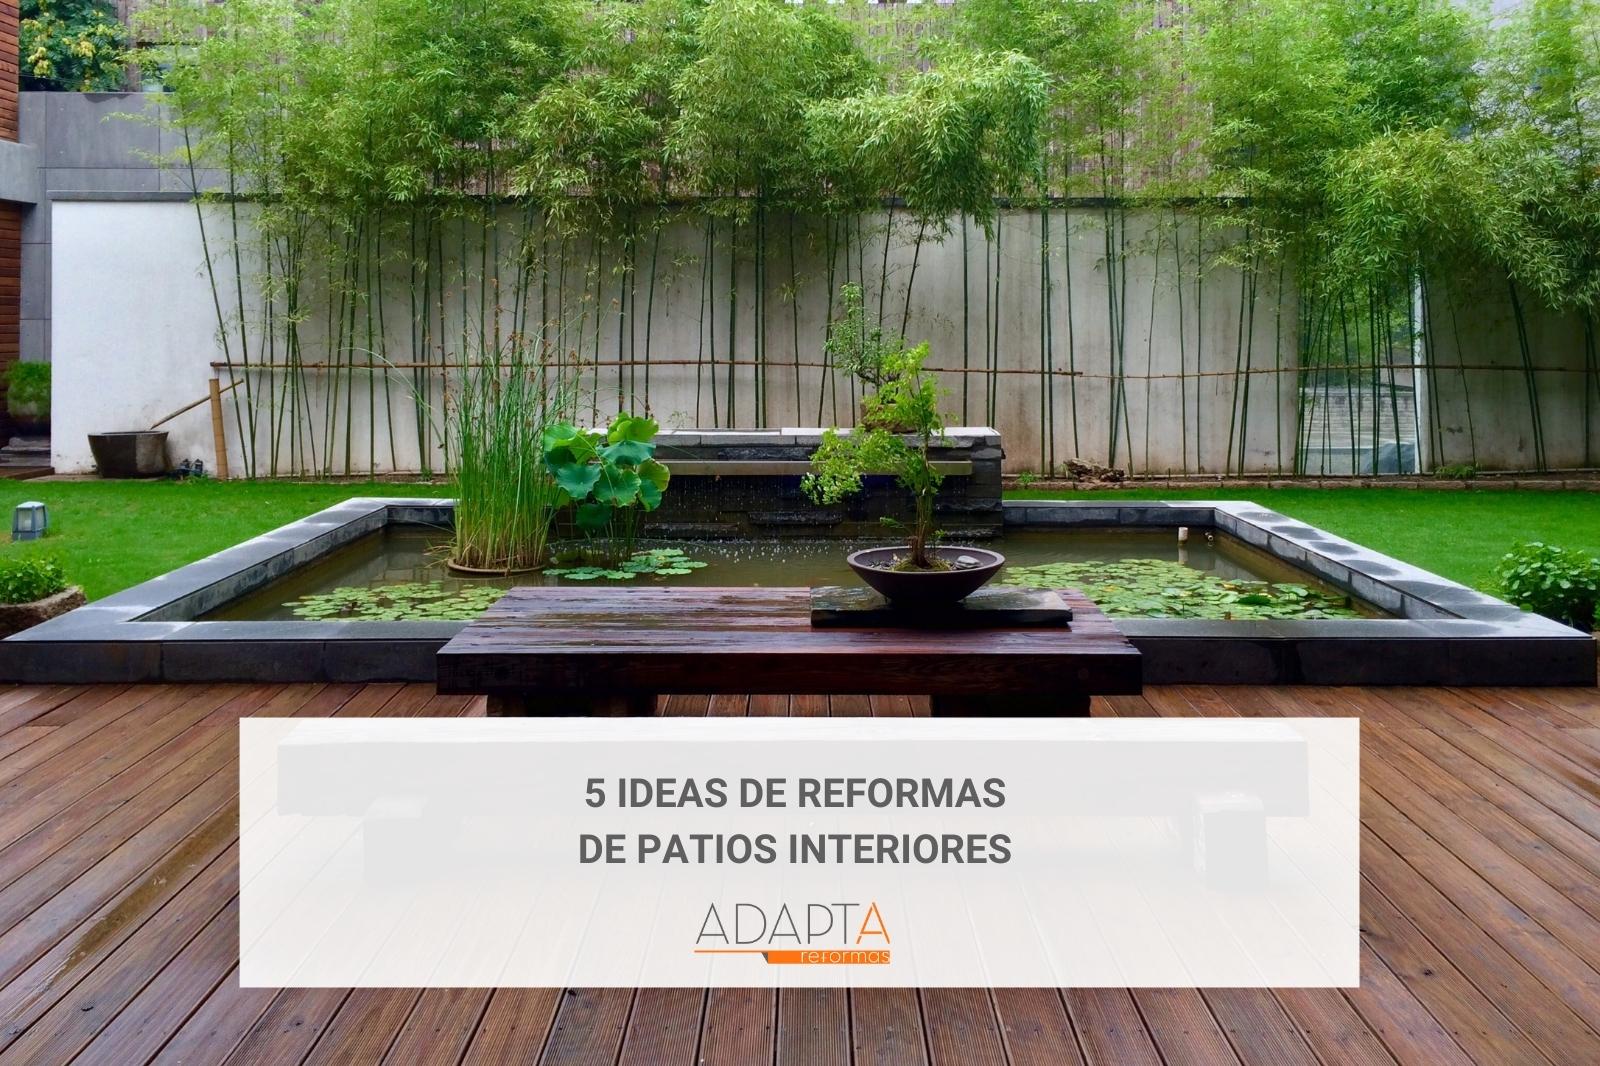 5 ideas de reformas de patios interiores